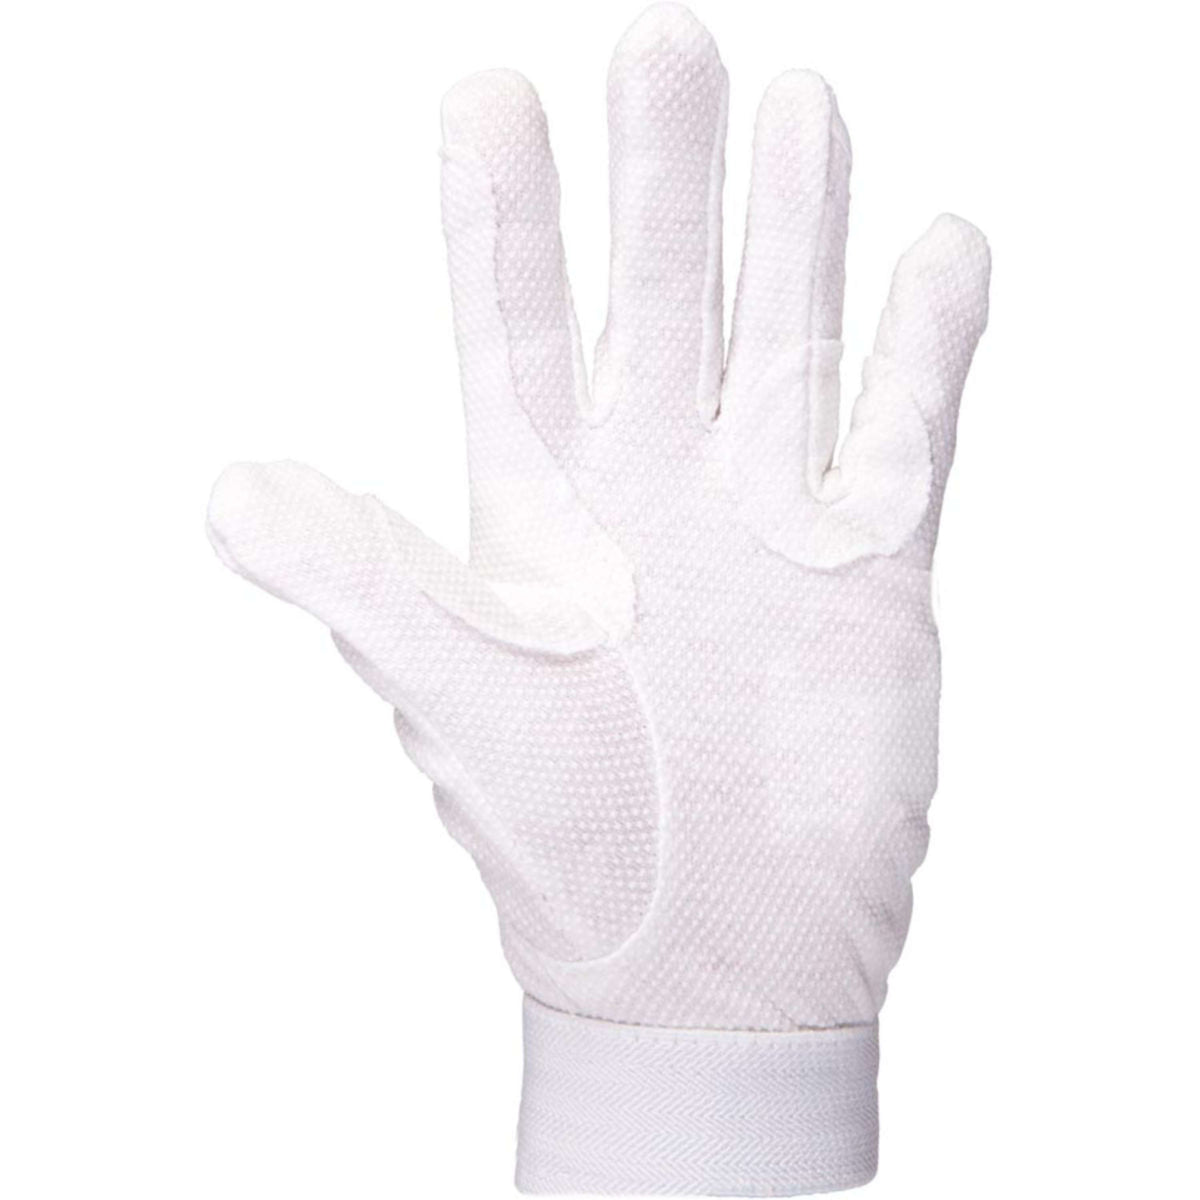 Premiere Handschuhe Weiß